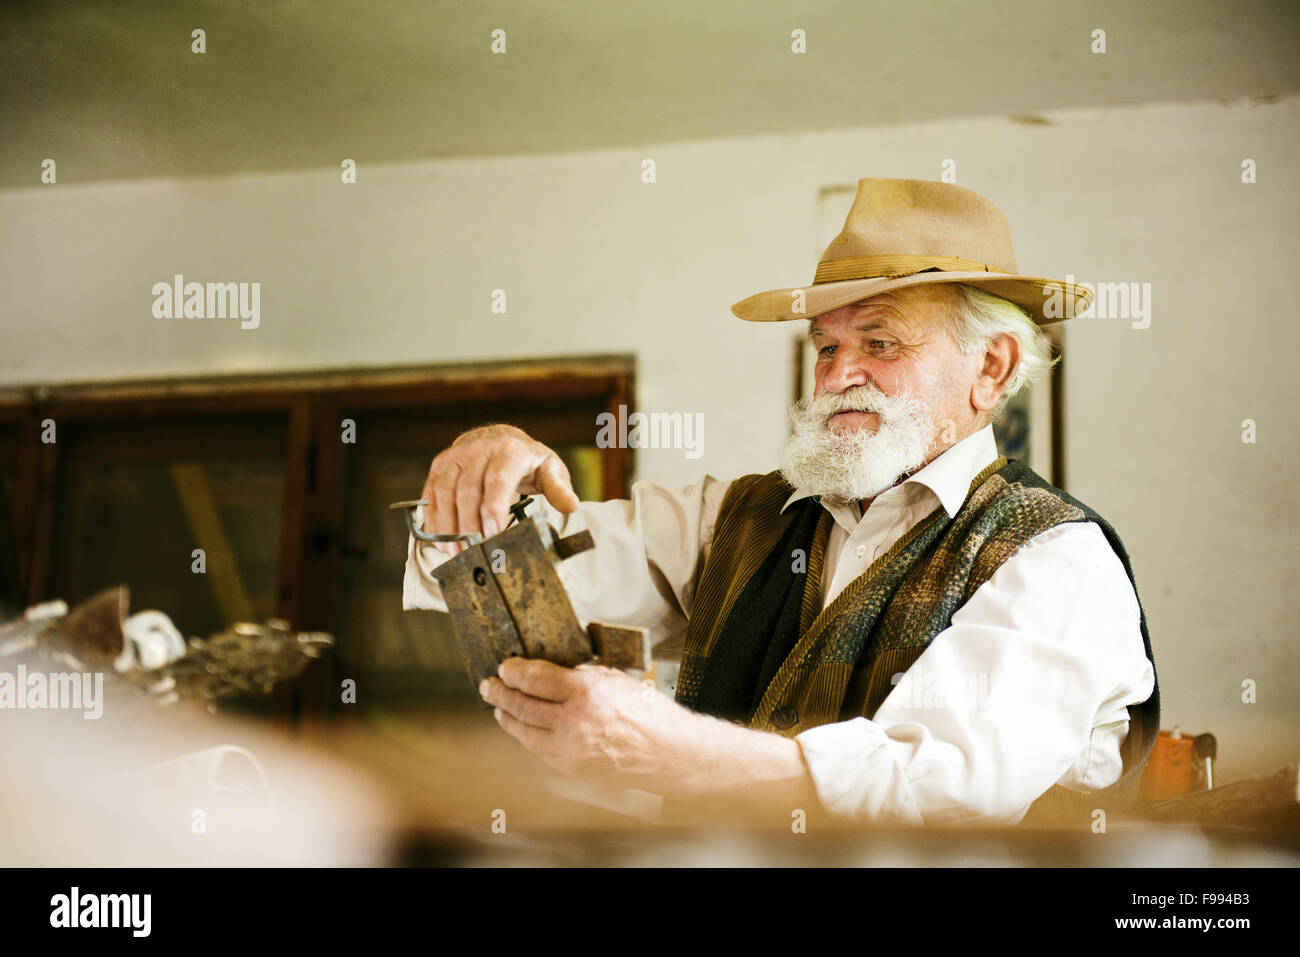 Alter Bauer mit Bart und Hut in seinem Arbeitszimmer Stockfoto